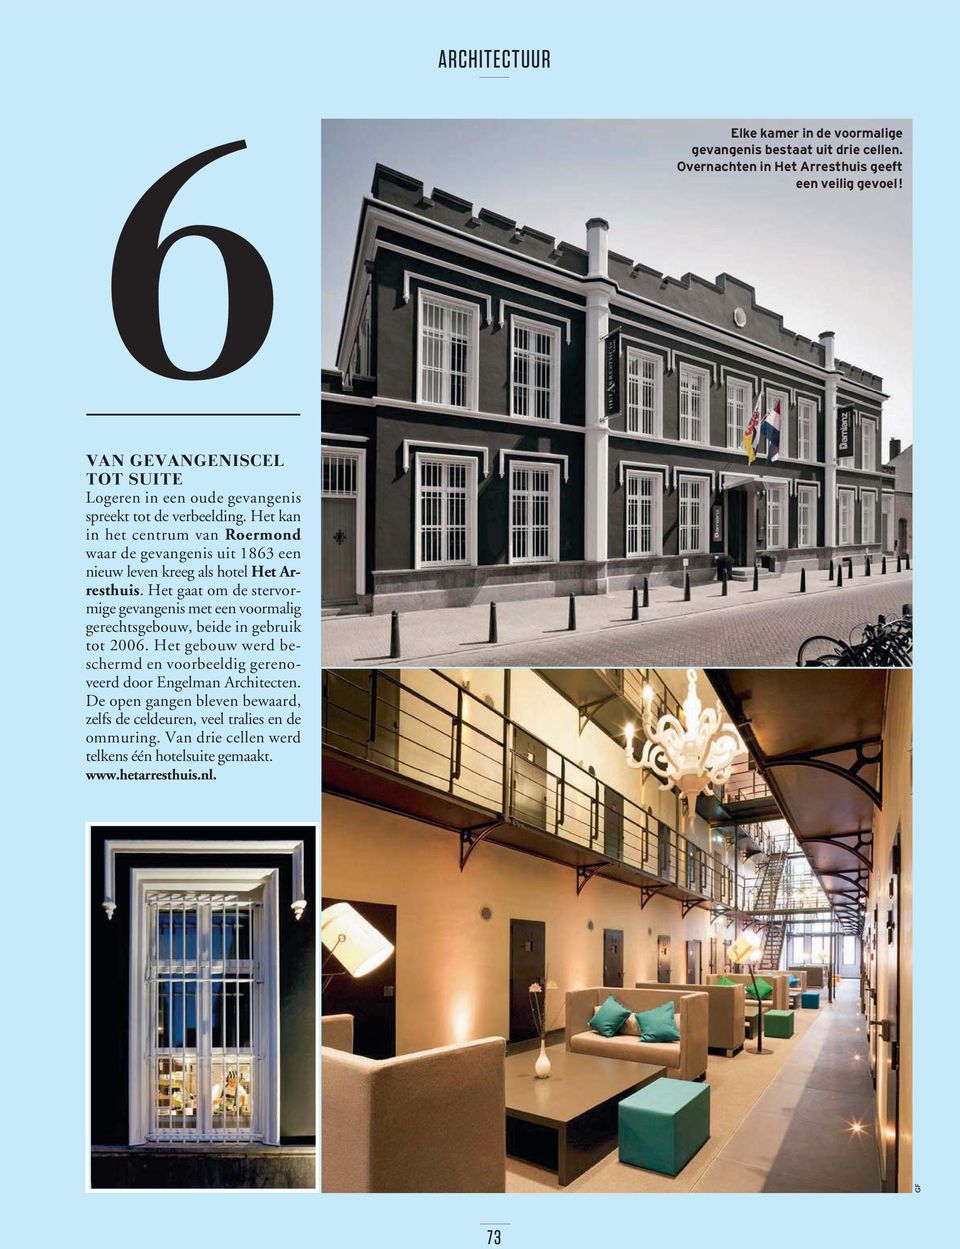 Het kan in het centrum van Roermond waar de gevangenis uit 1863 een nieuw leven kreeg als hotel Het Arresthuis.